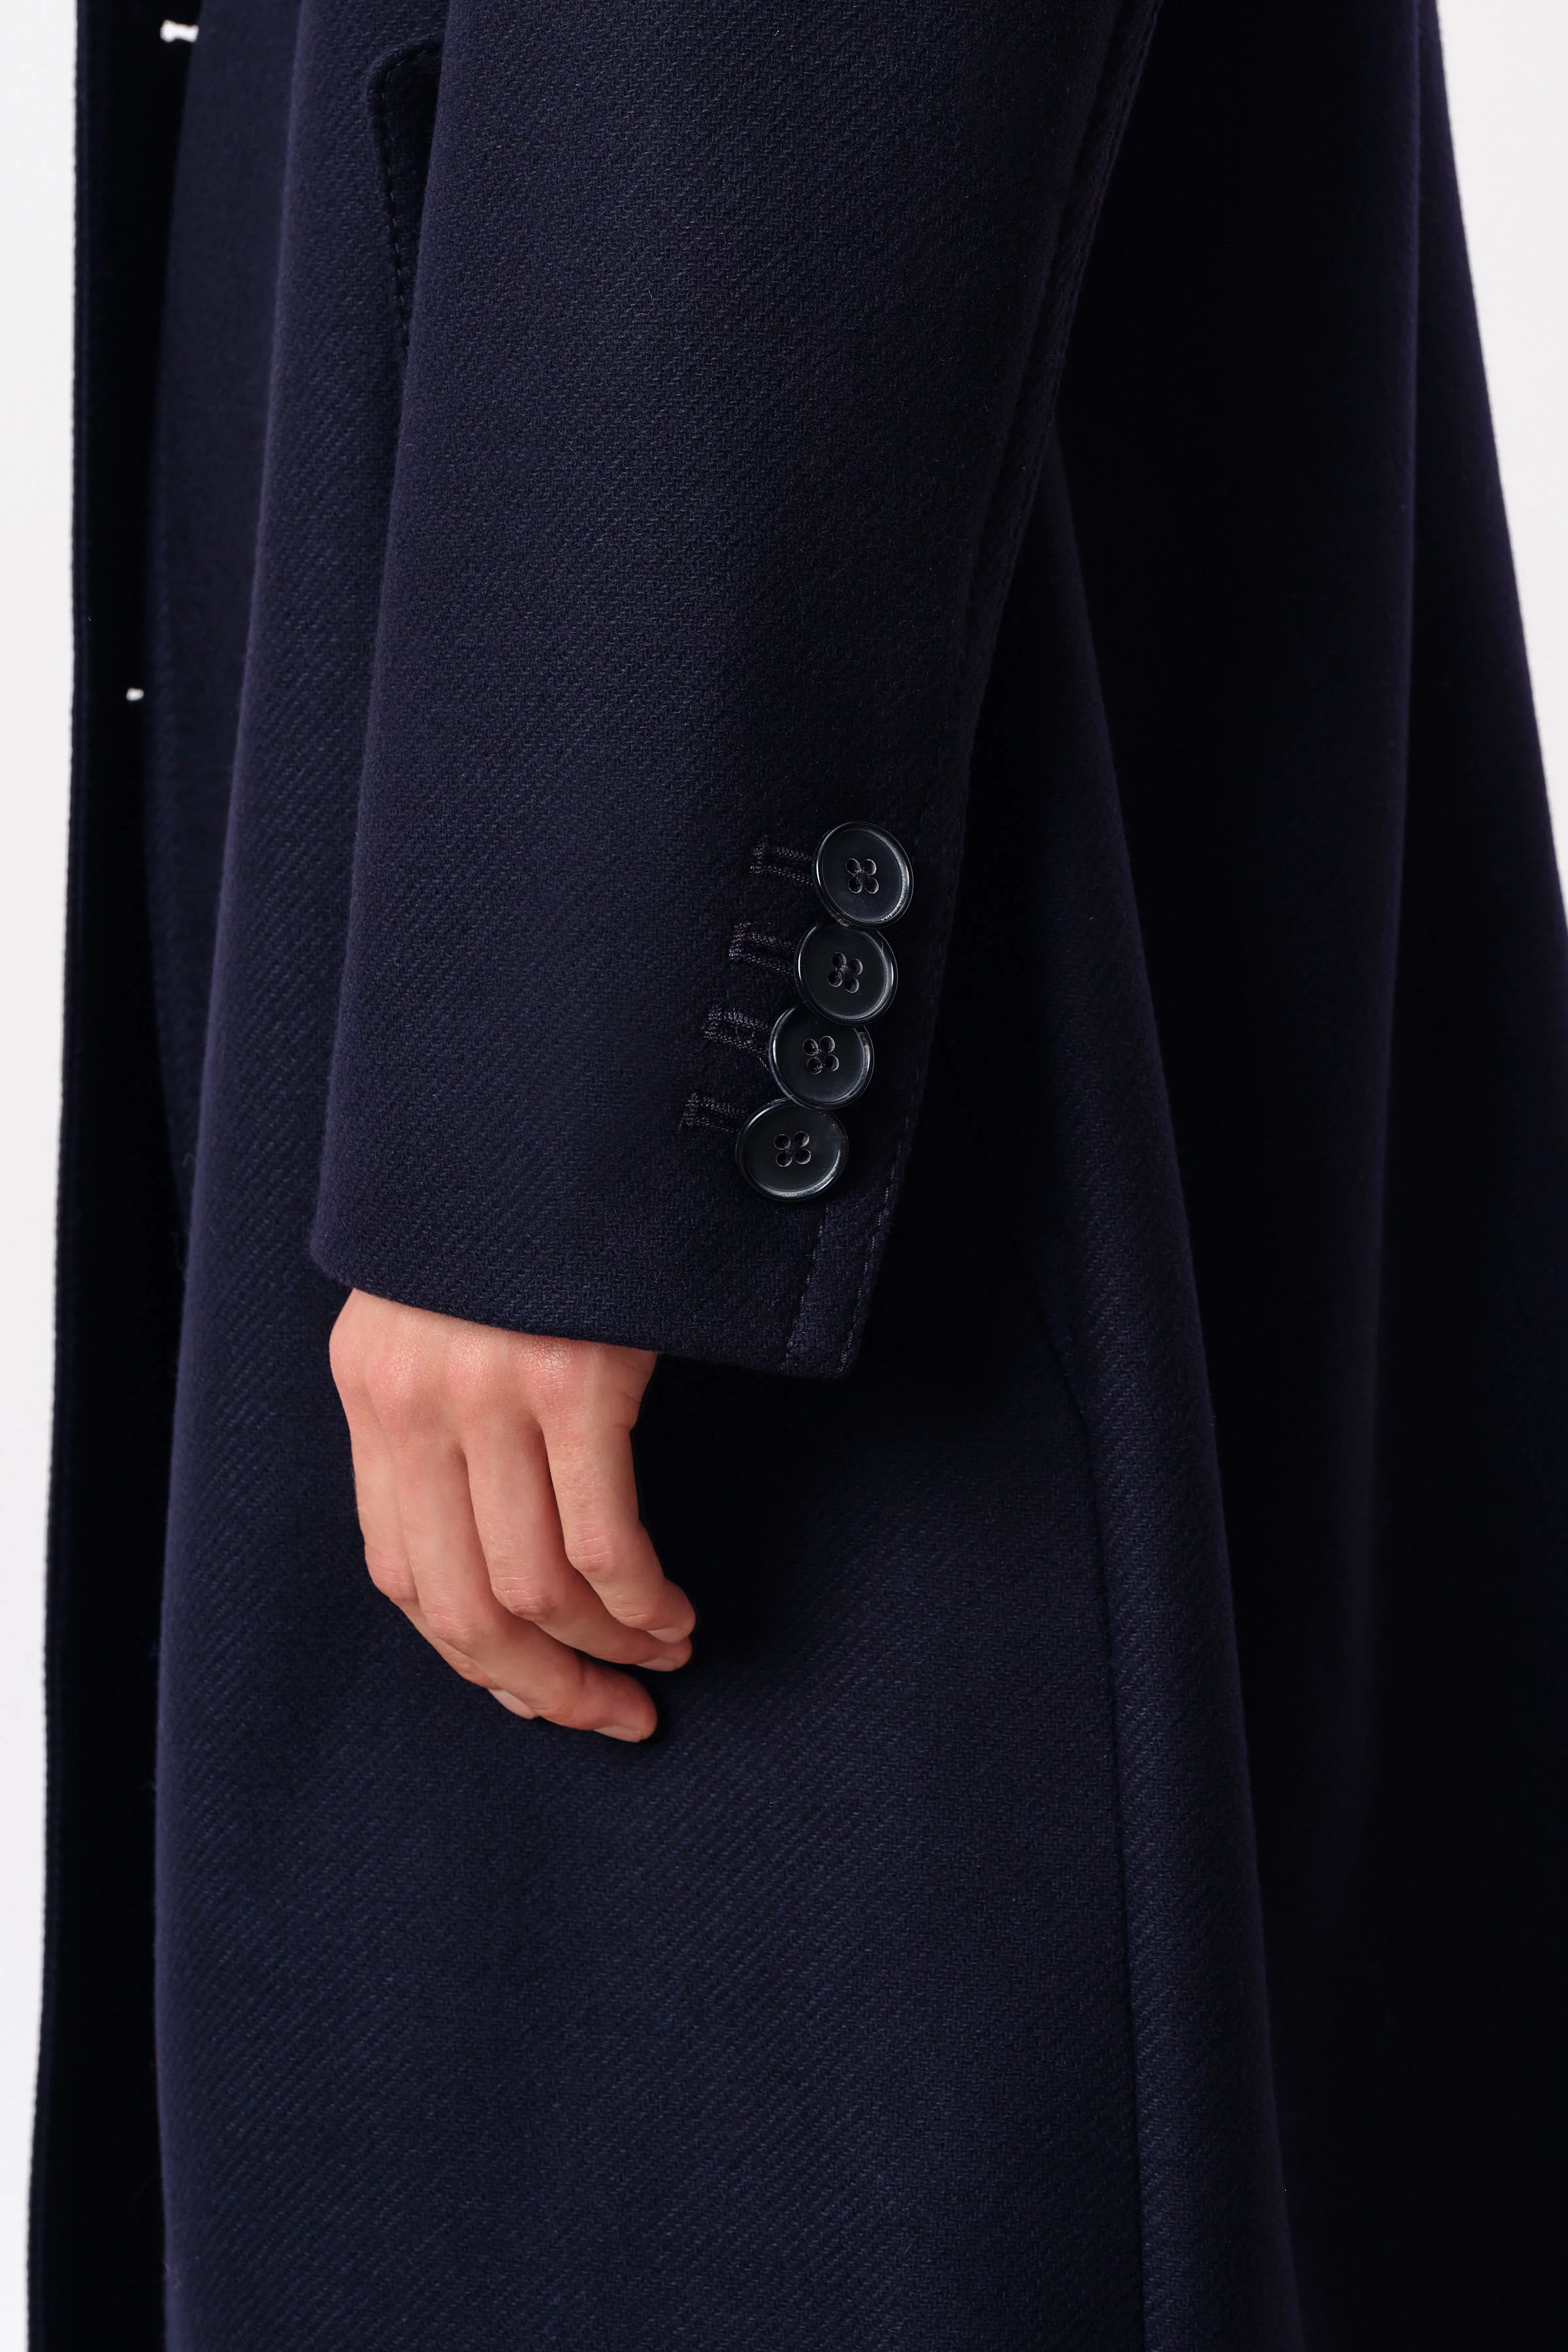 uniform coat in winter wool mix